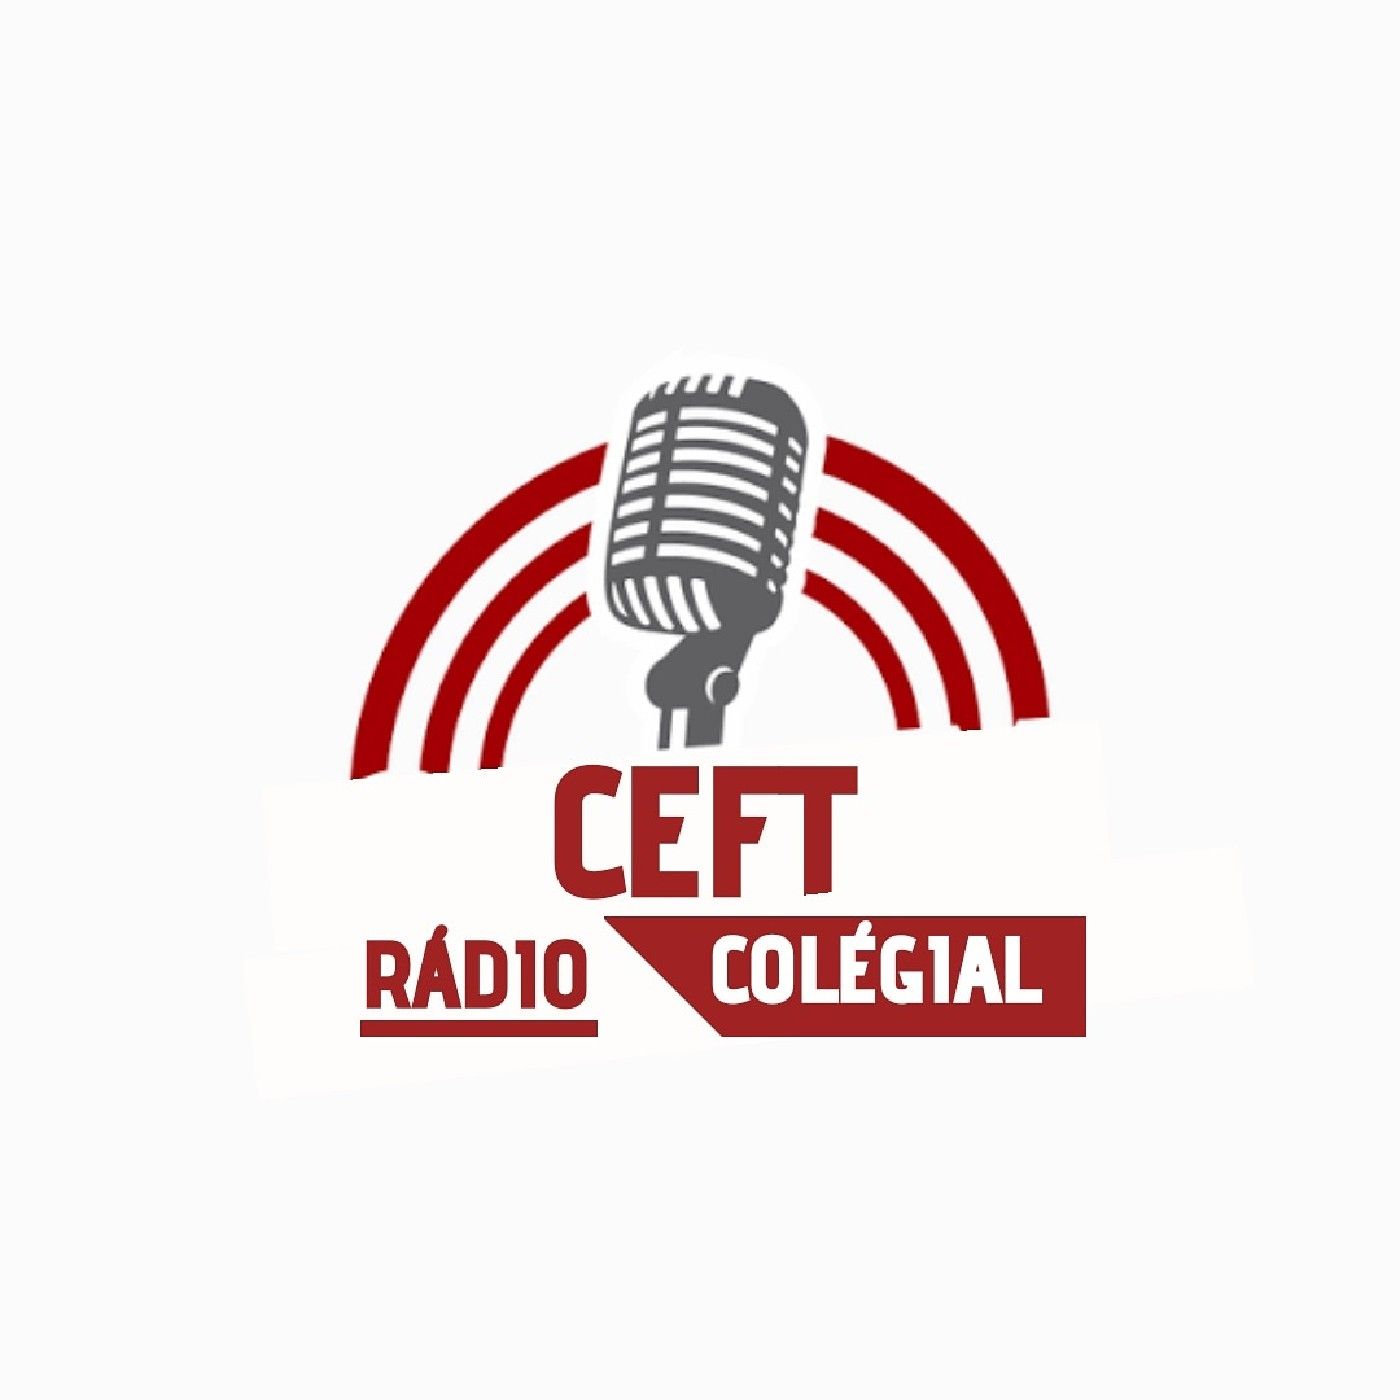 Ceft Colegial A Rádio Do Aluno